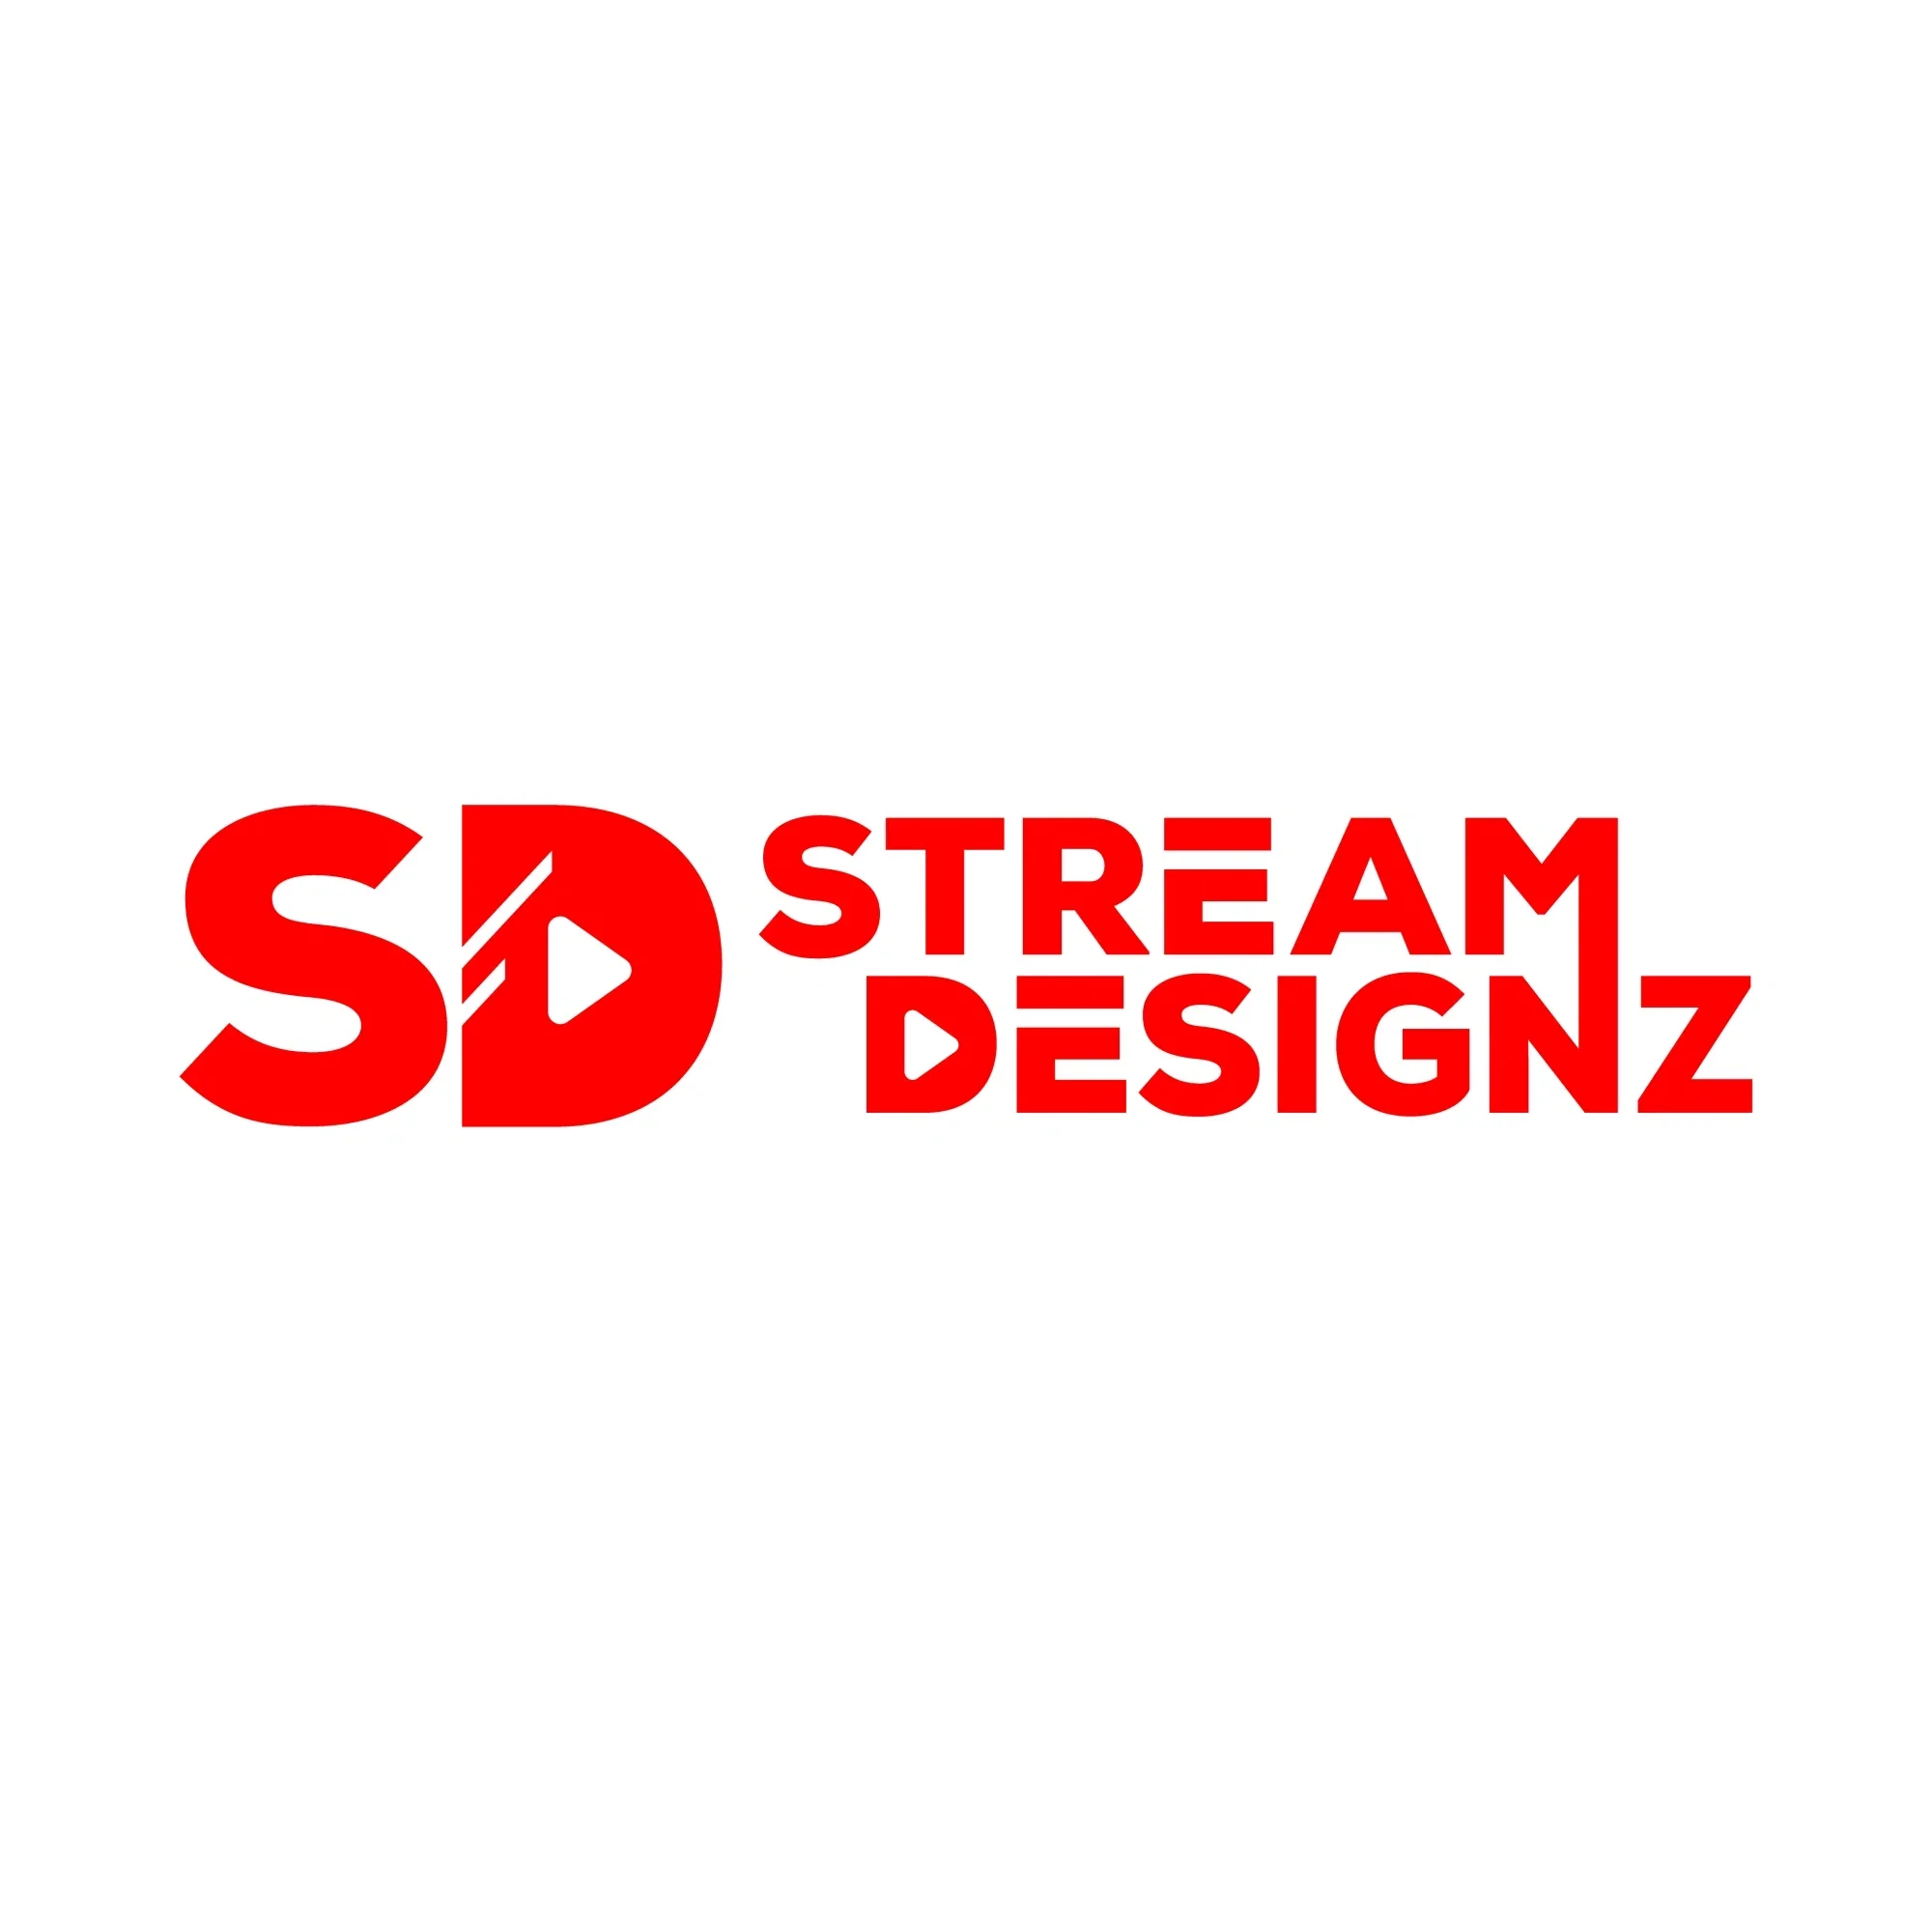 Stream Designz Promo Codes & Coupons